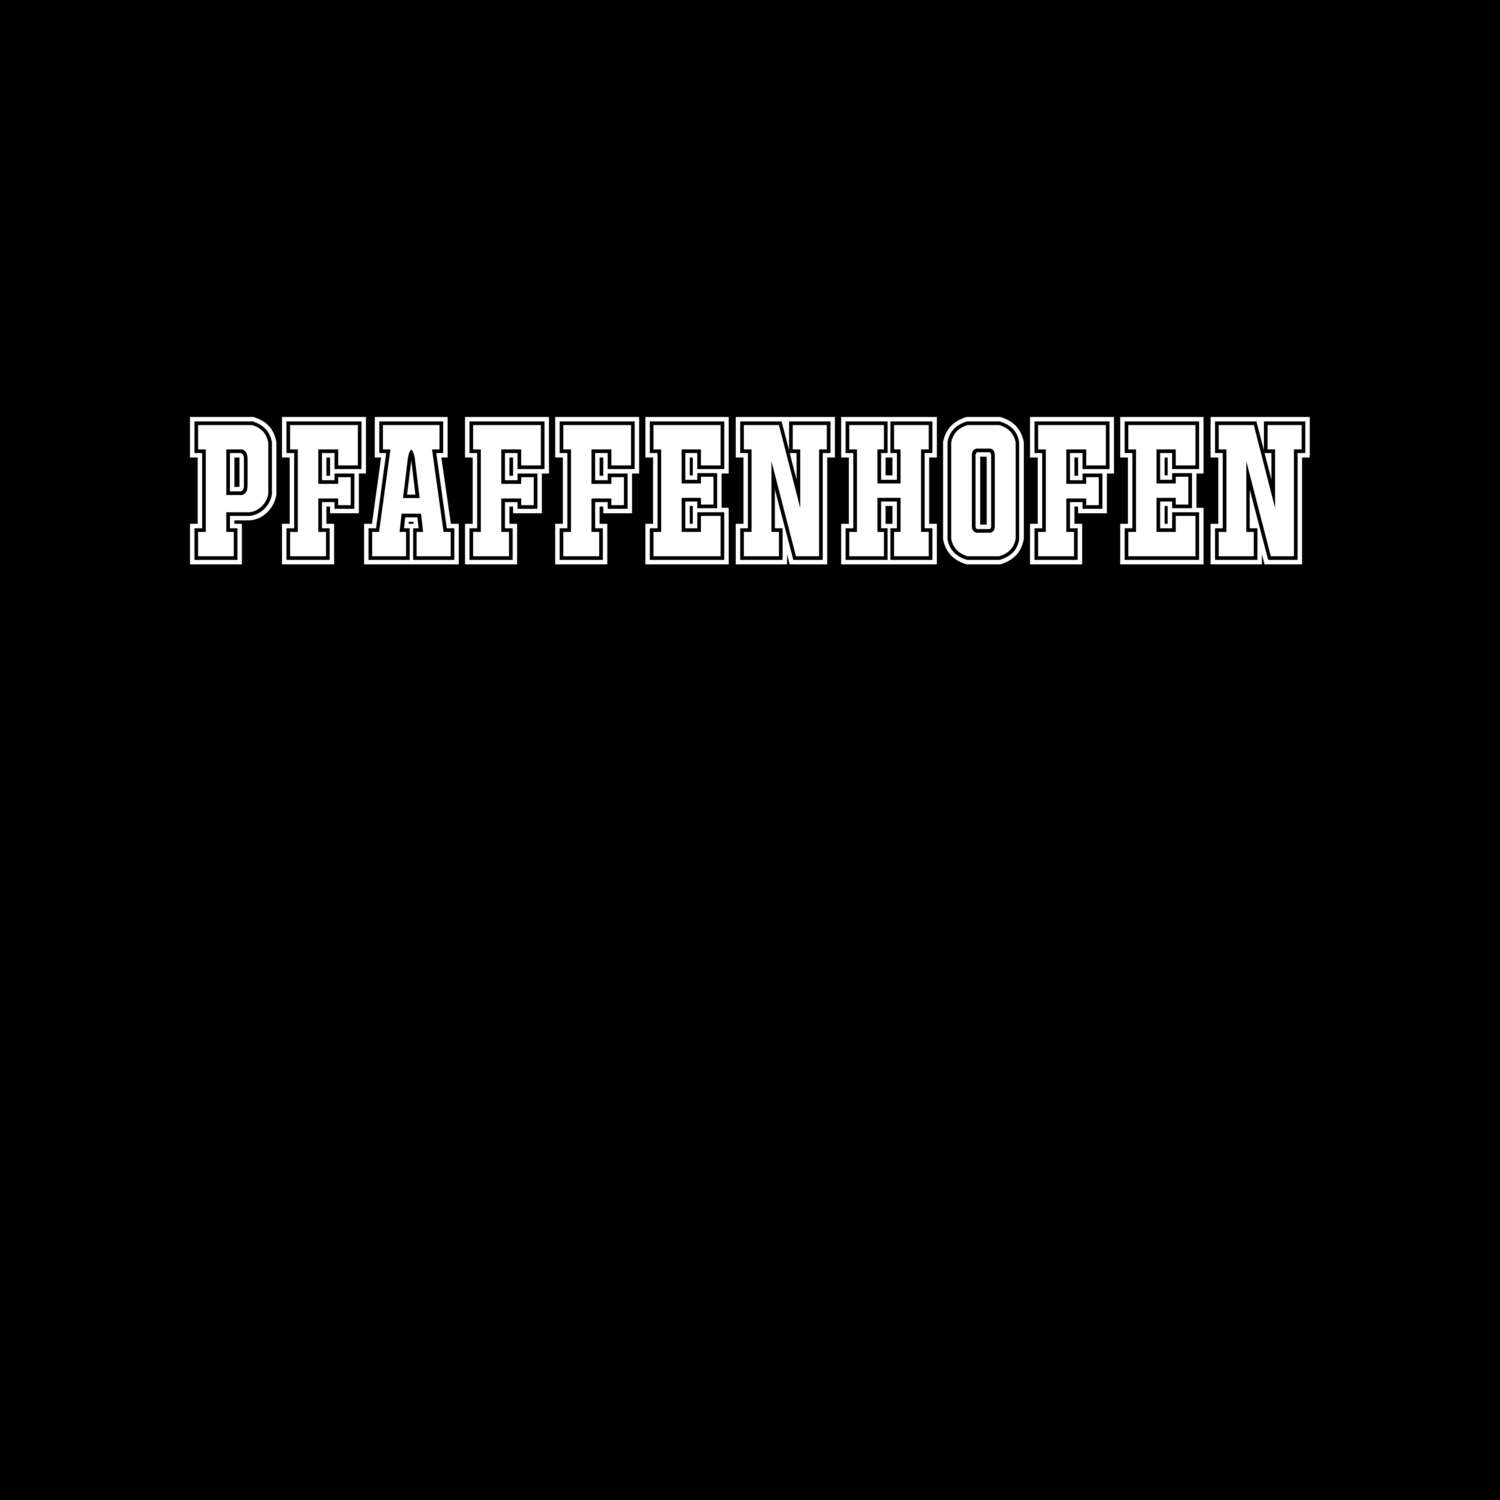 Pfaffenhofen T-Shirt »Classic«